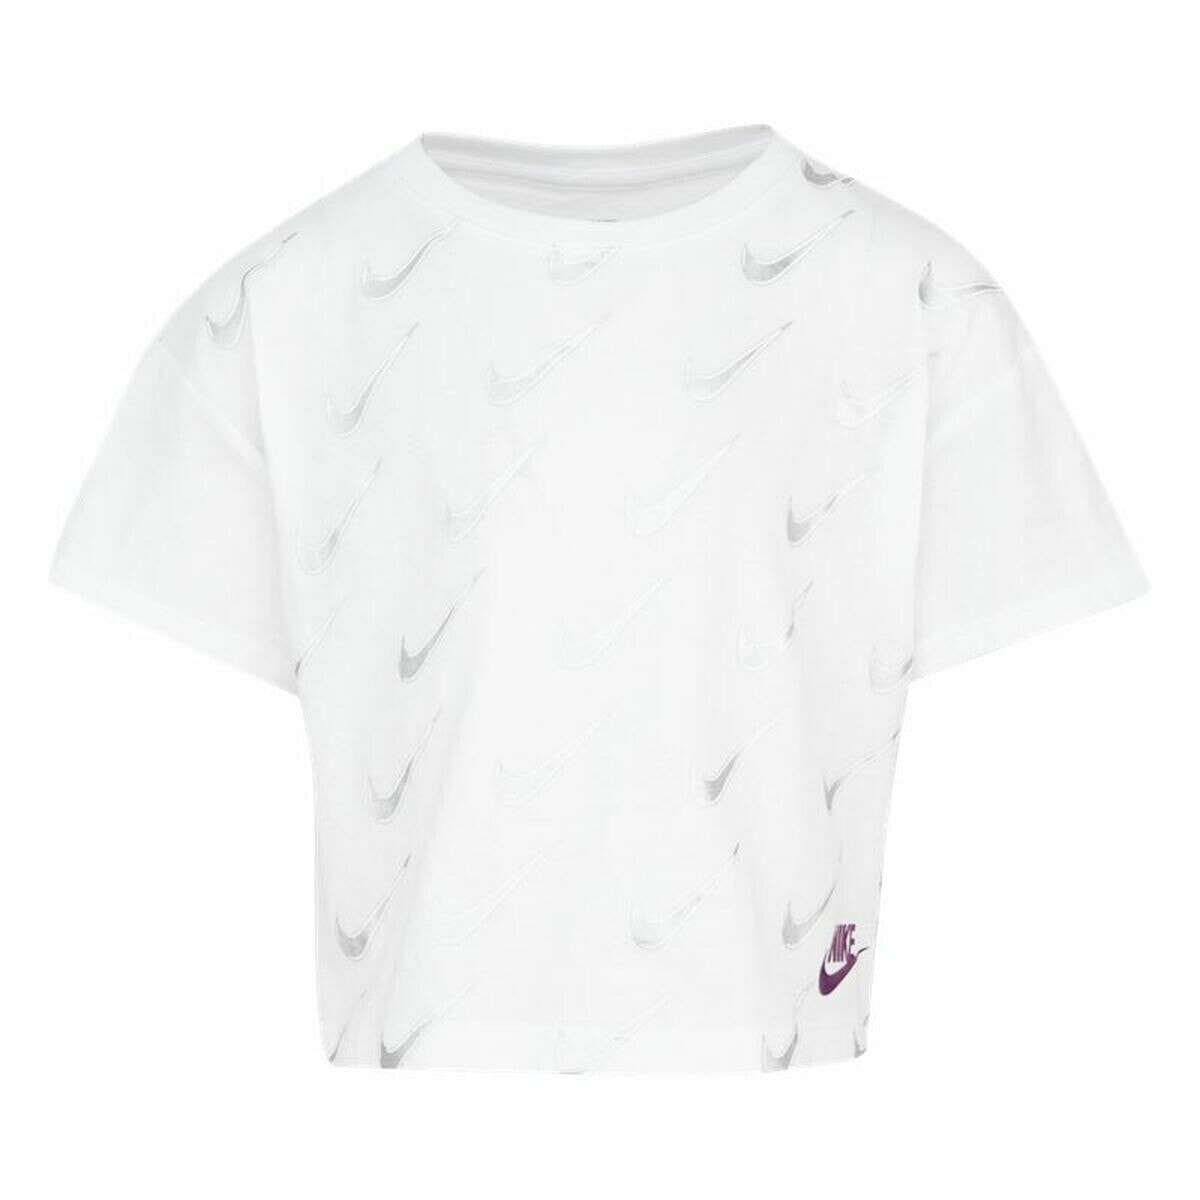 Child's Short Sleeve T-Shirt Nike Sb Icon White